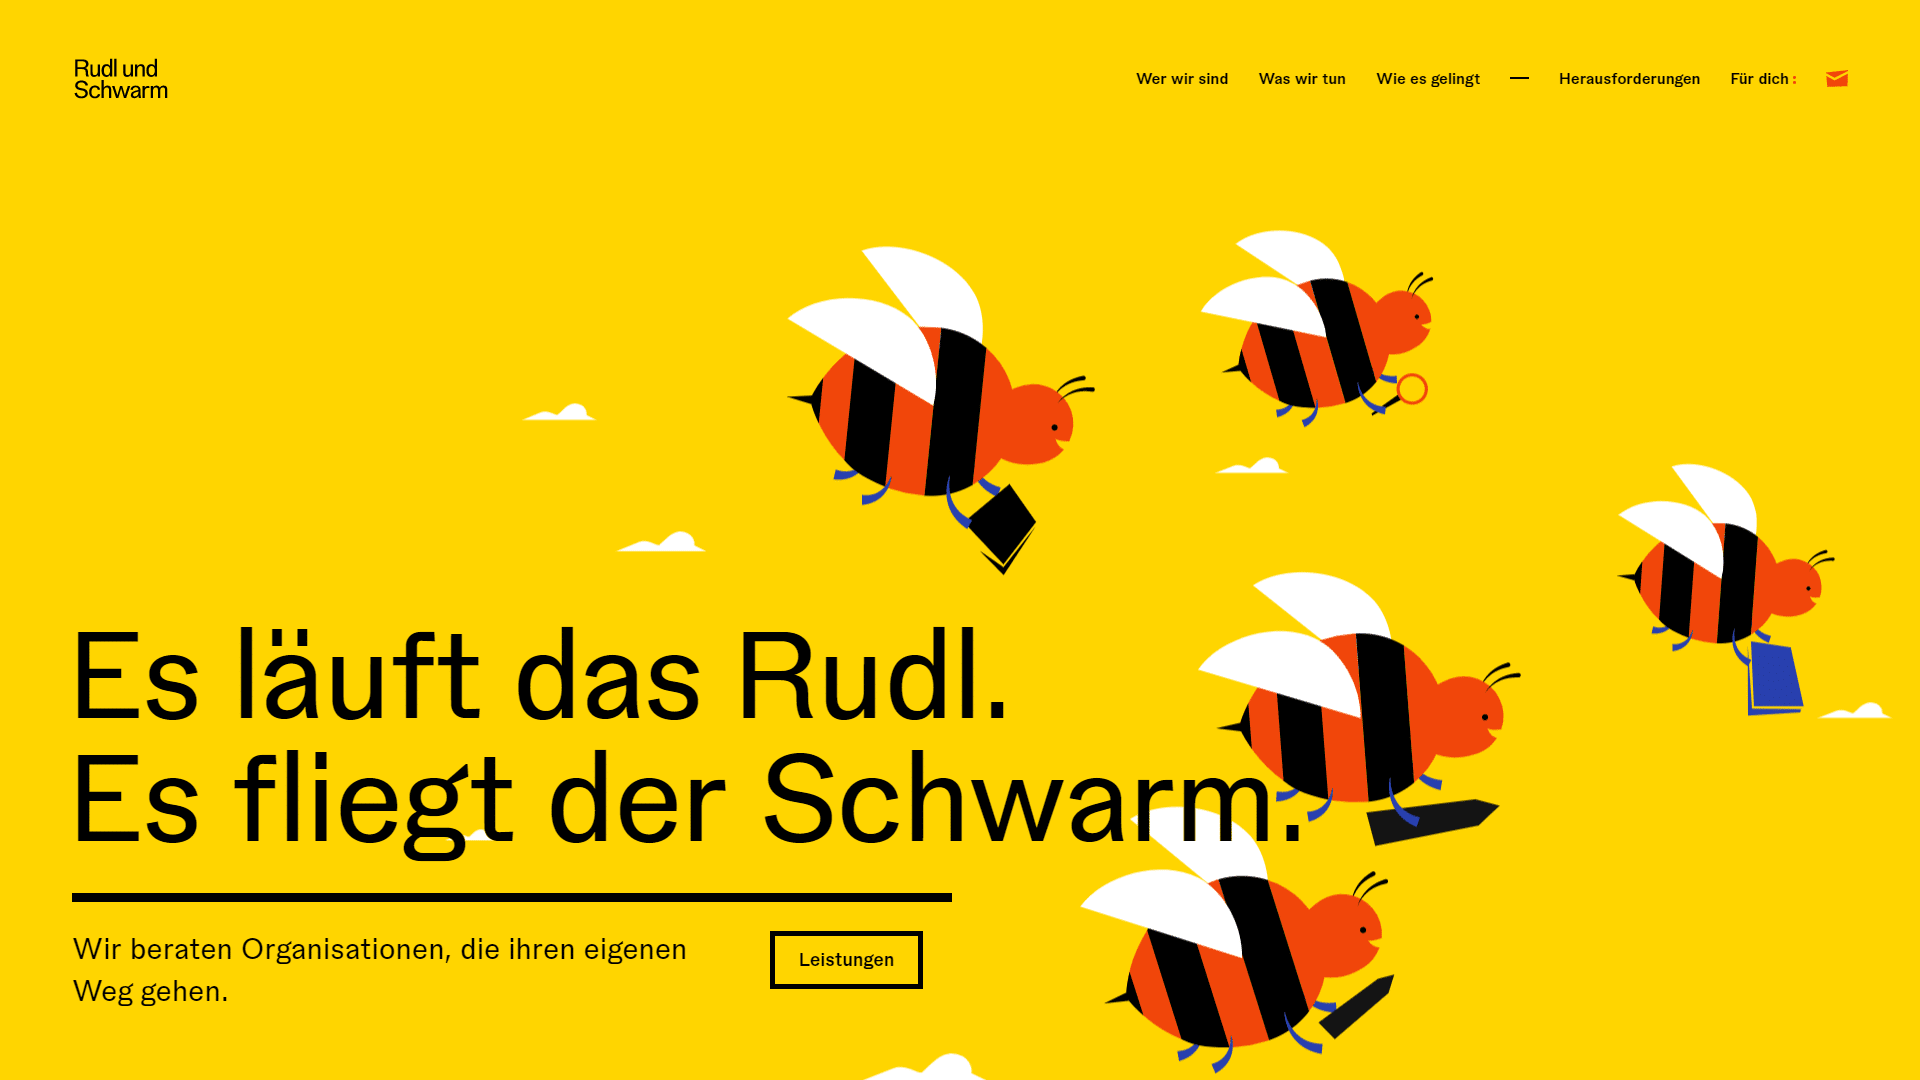 (c) Rudlundschwarm.at